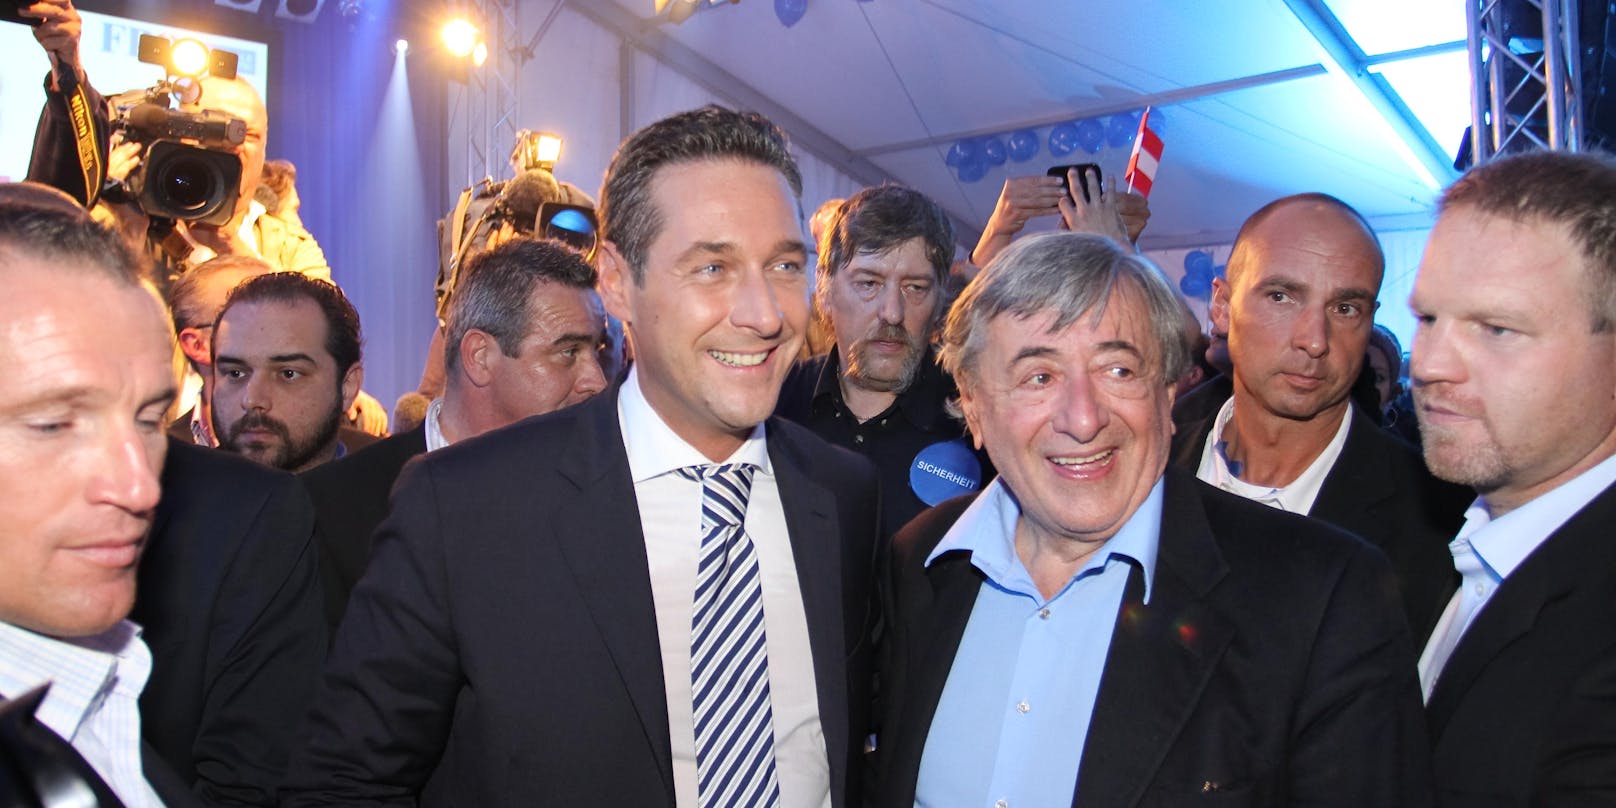 Langjährige Beziehungen: Strache und Lugner im FPÖ-Zelt zur Wien-Wahl 2010